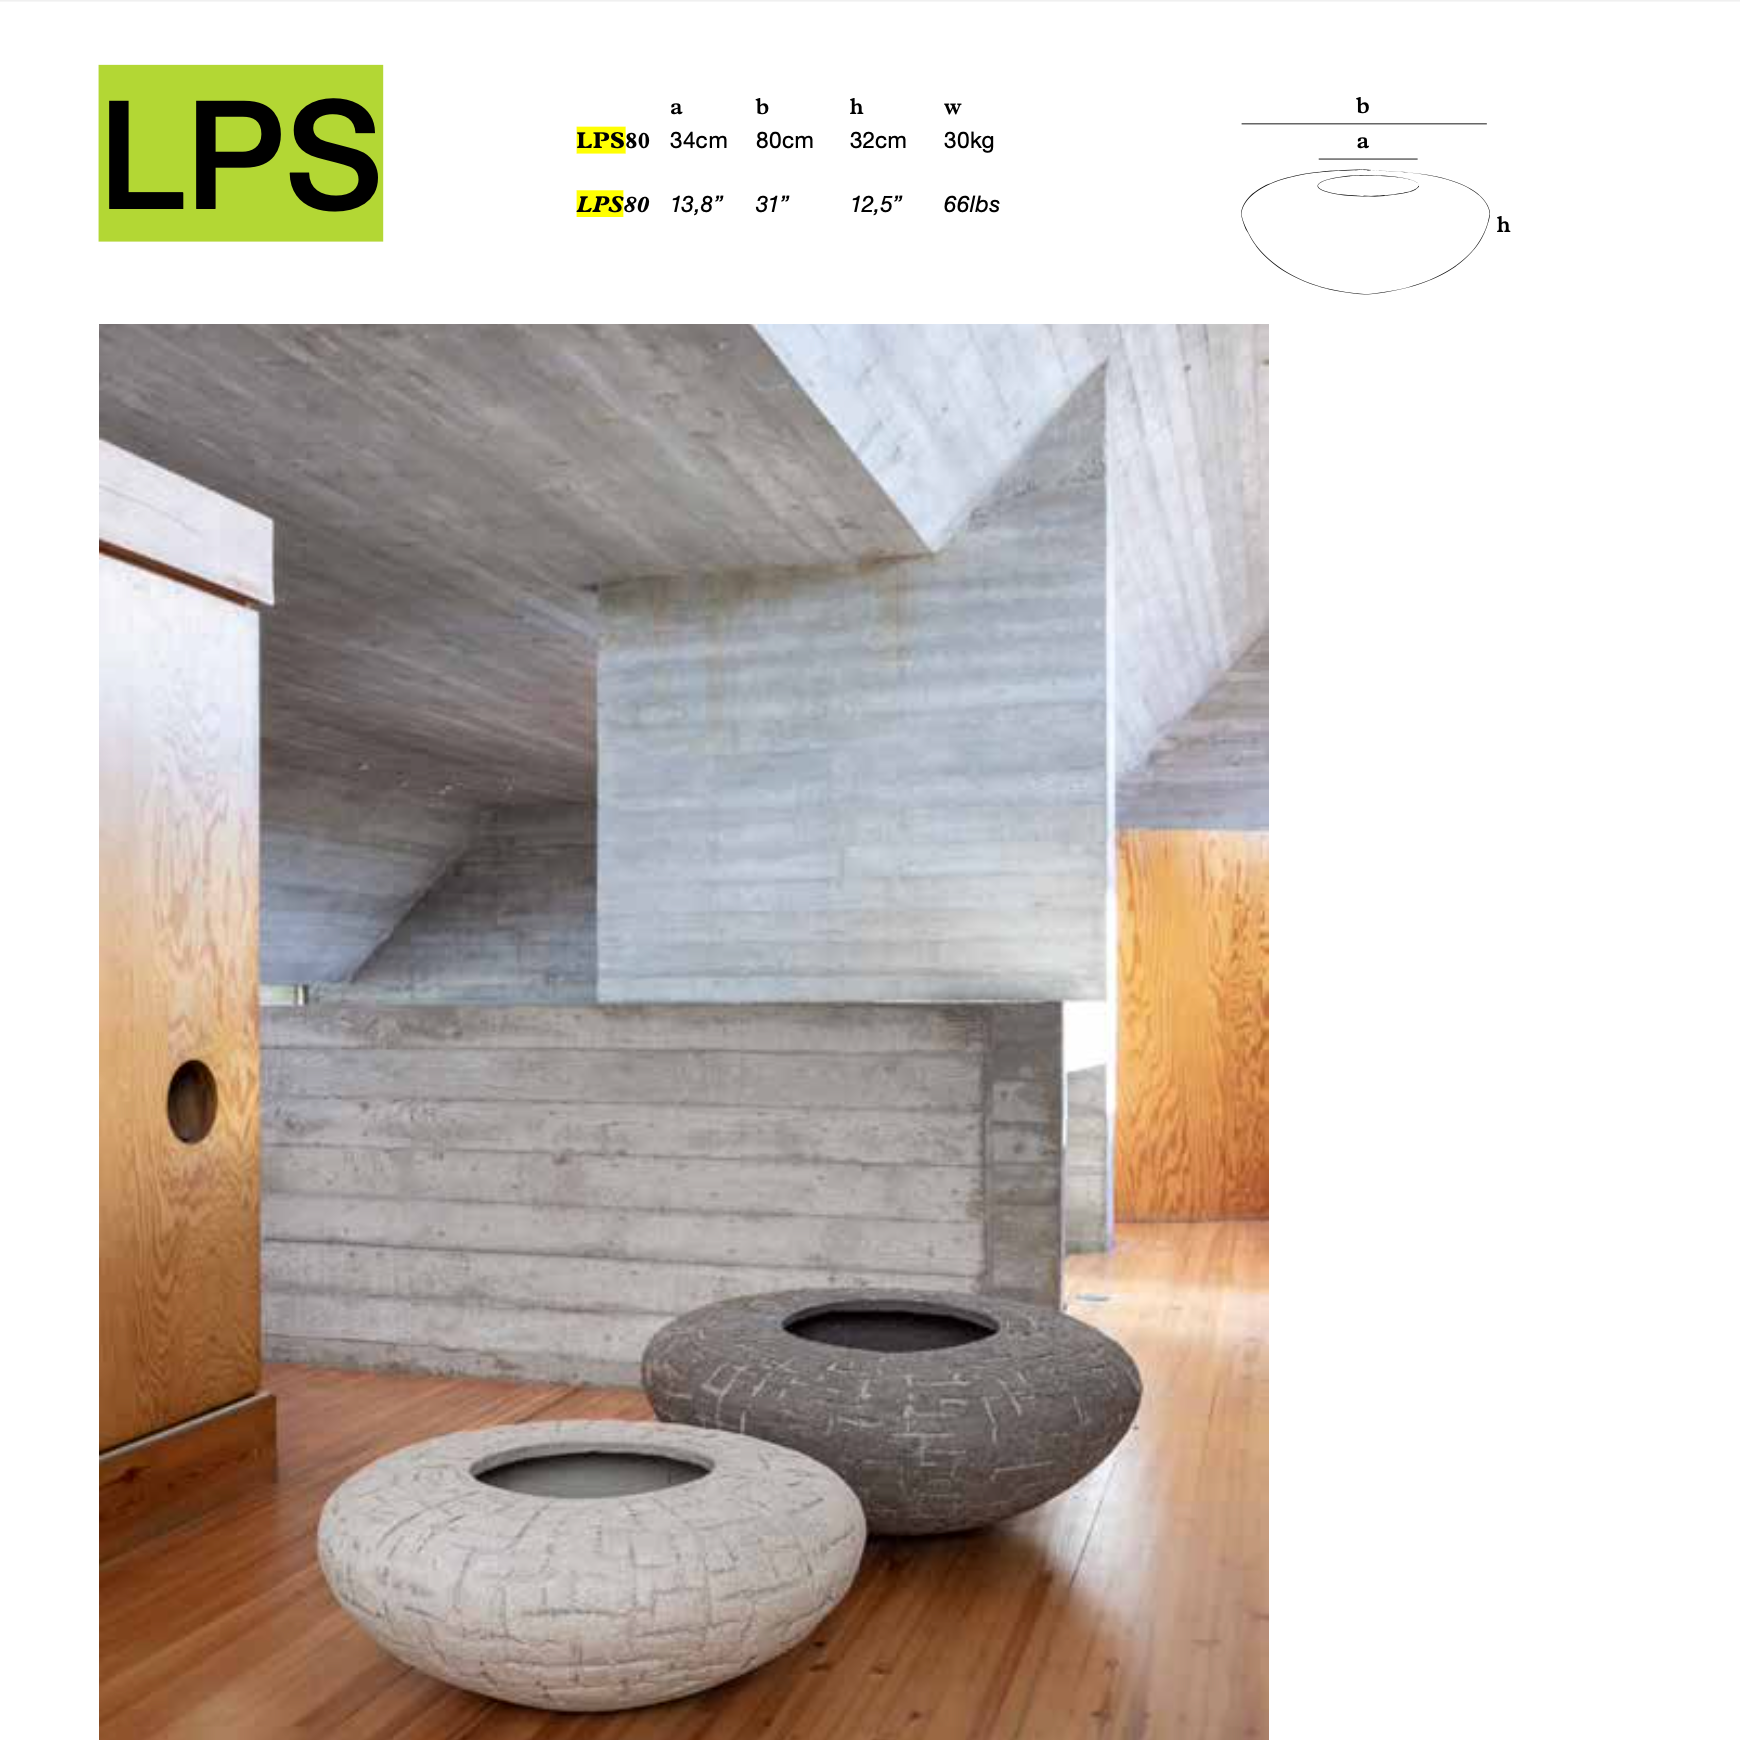 Verlieben Sie sich in das Modell LPS80 von Atelier Vierkant: Exquisite, handgemachte Terrakotta-Pflanzgefäße aus Belgien. Gestalten Sie Ihr Zuhause jetzt!